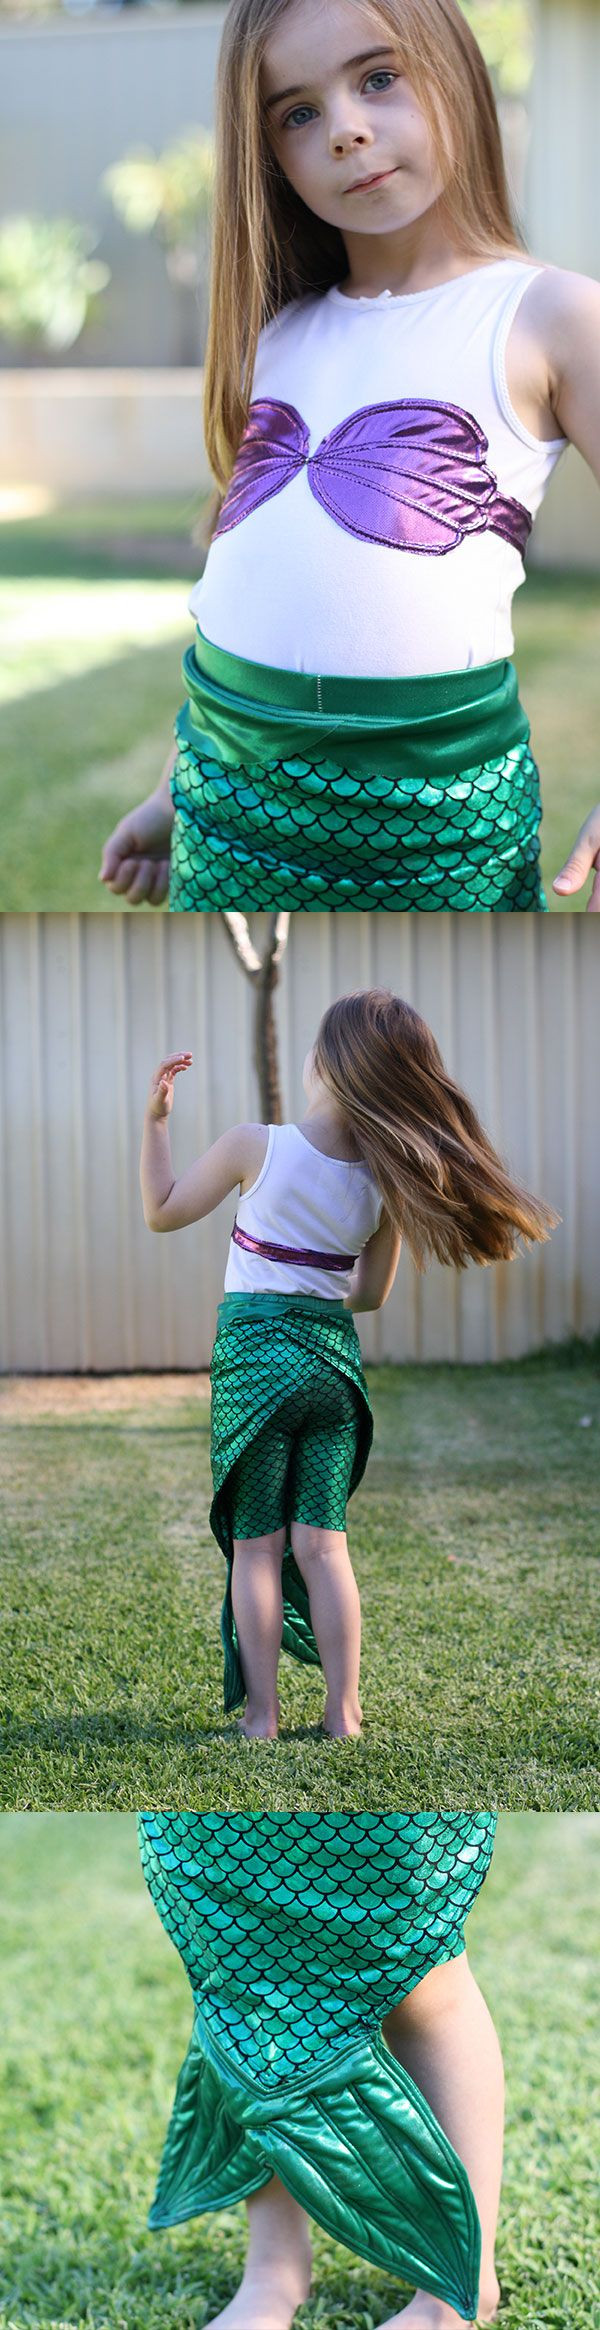 DIY Mermaid Costume Toddler
 the little mermaid costume